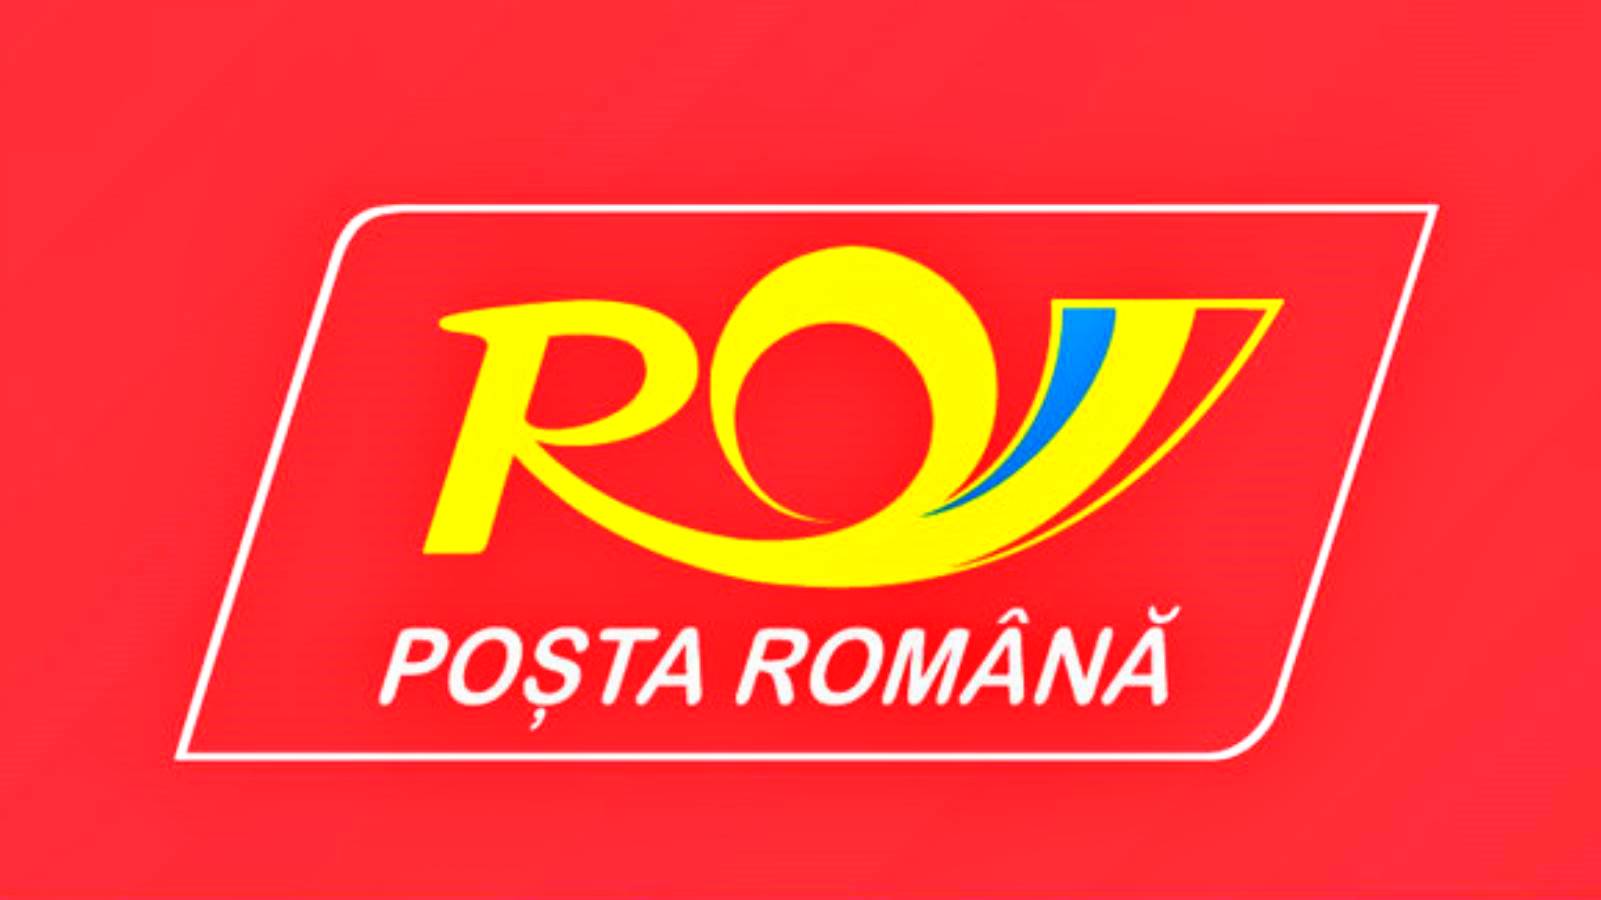 Kontynuacja modernizacji poczty rumuńskiej Ogłoszenie spółki